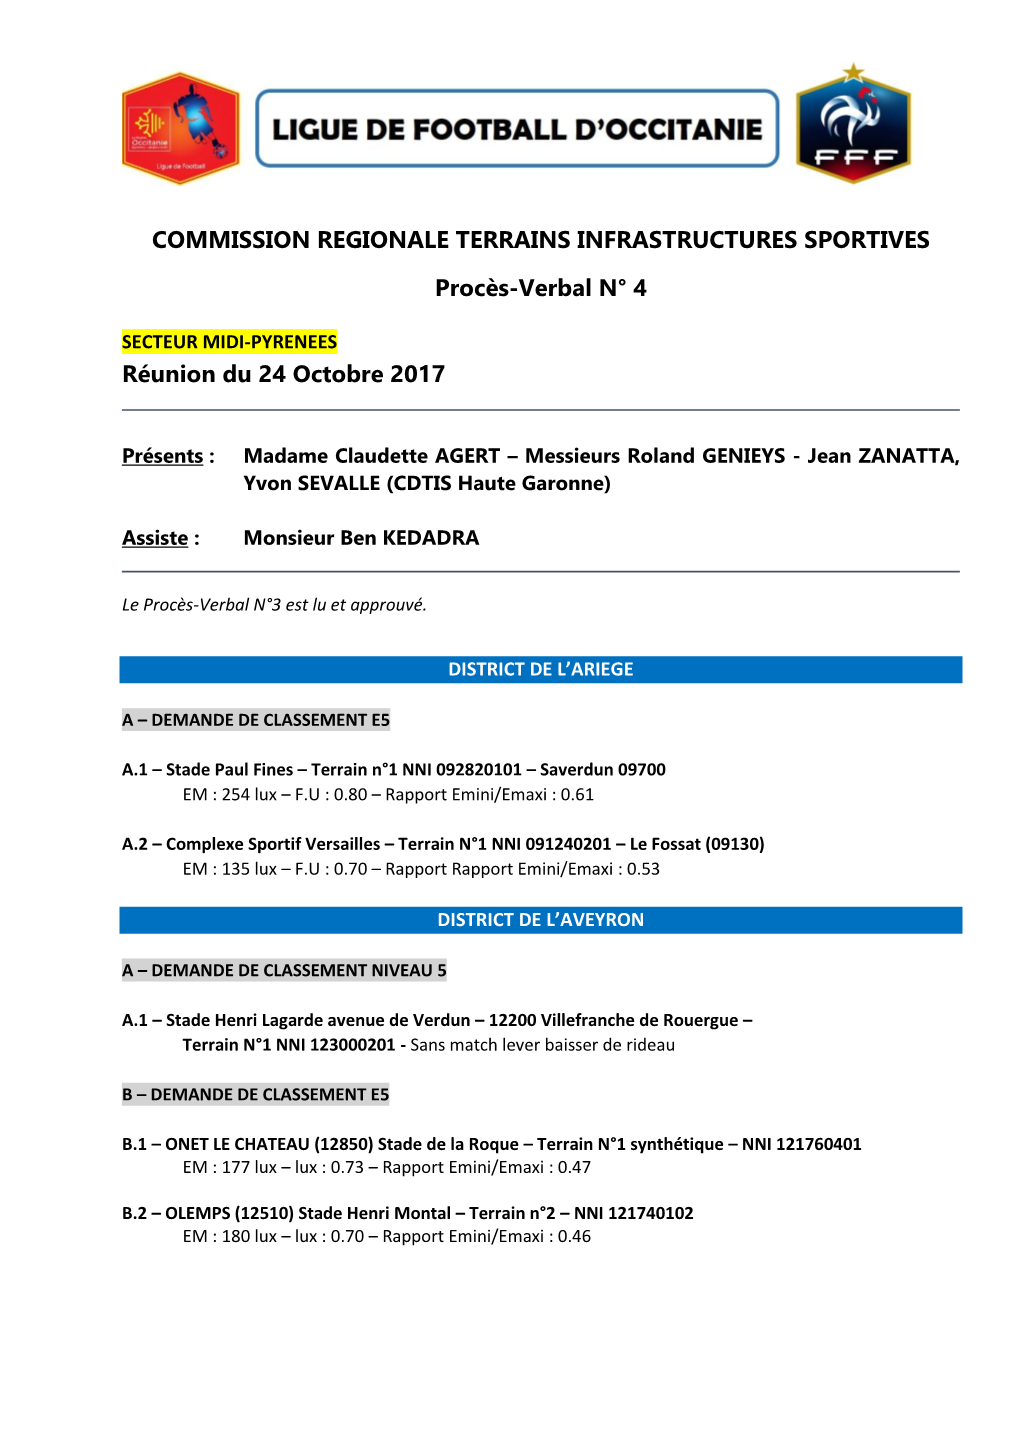 COMMISSION REGIONALE TERRAINS INFRASTRUCTURES SPORTIVES Procès-Verbal N° 4 Réunion Du 24 Octobre 2017